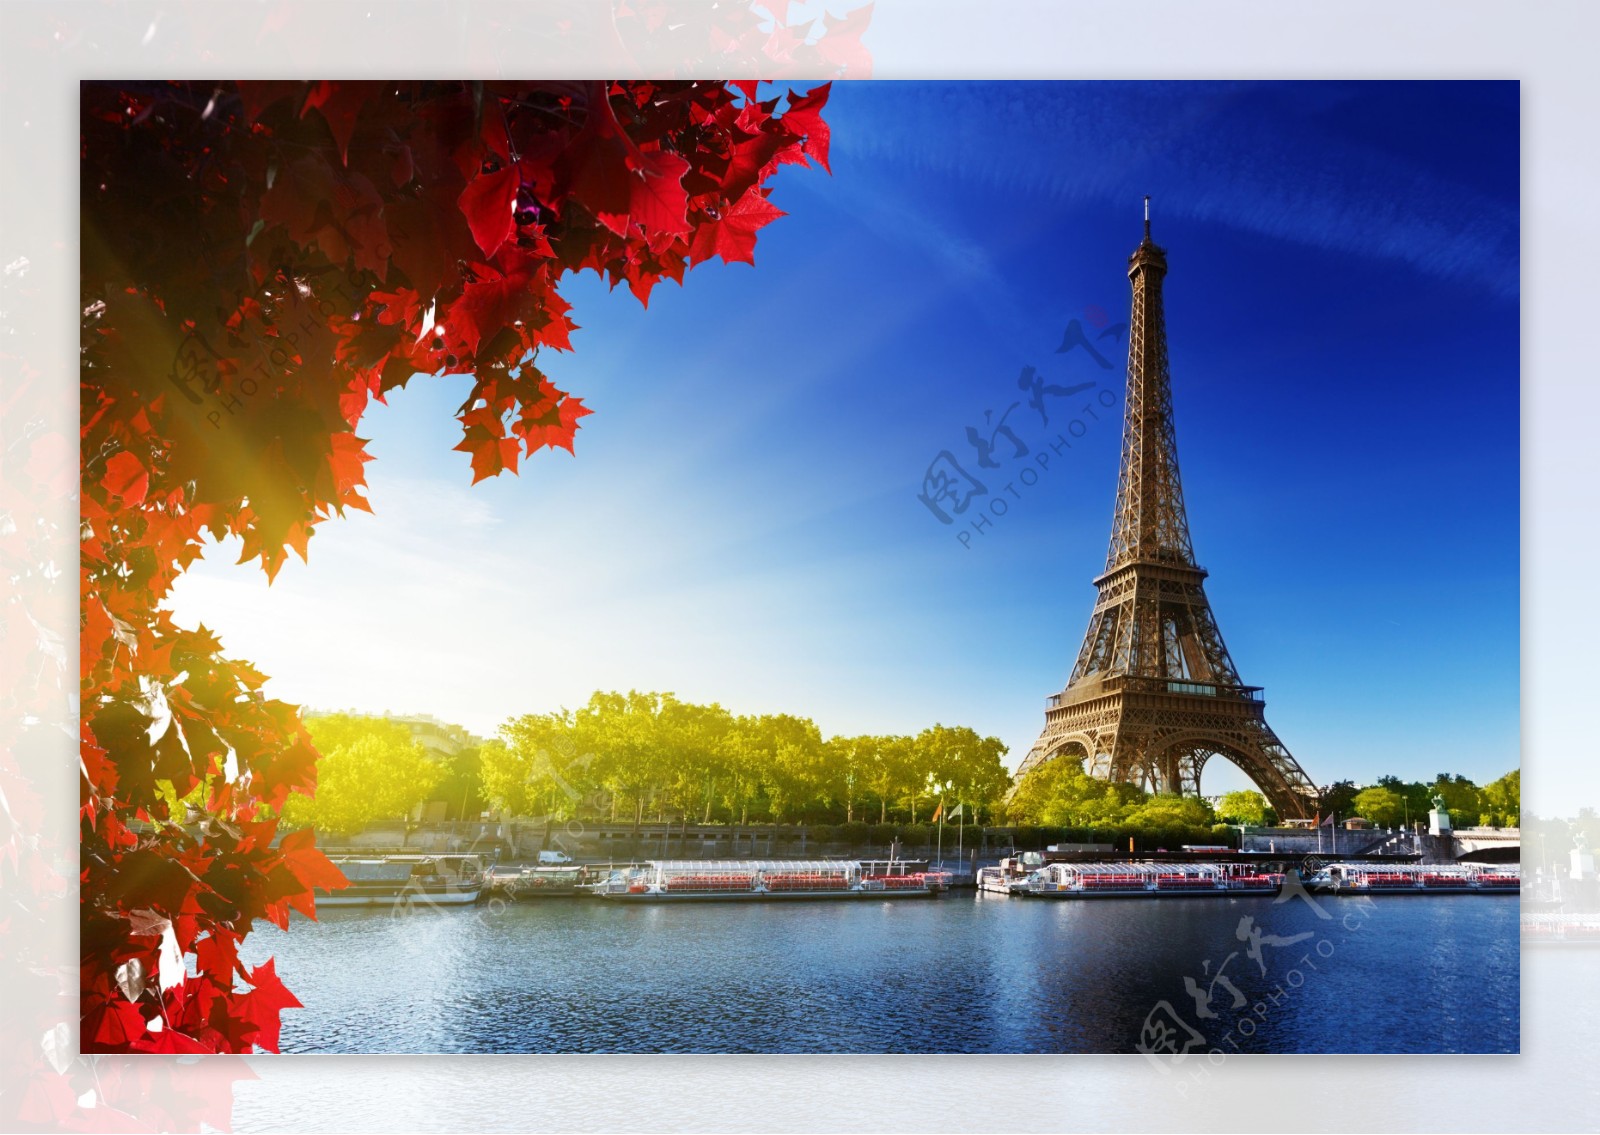 巴黎铁塔艾菲尔铁塔图片